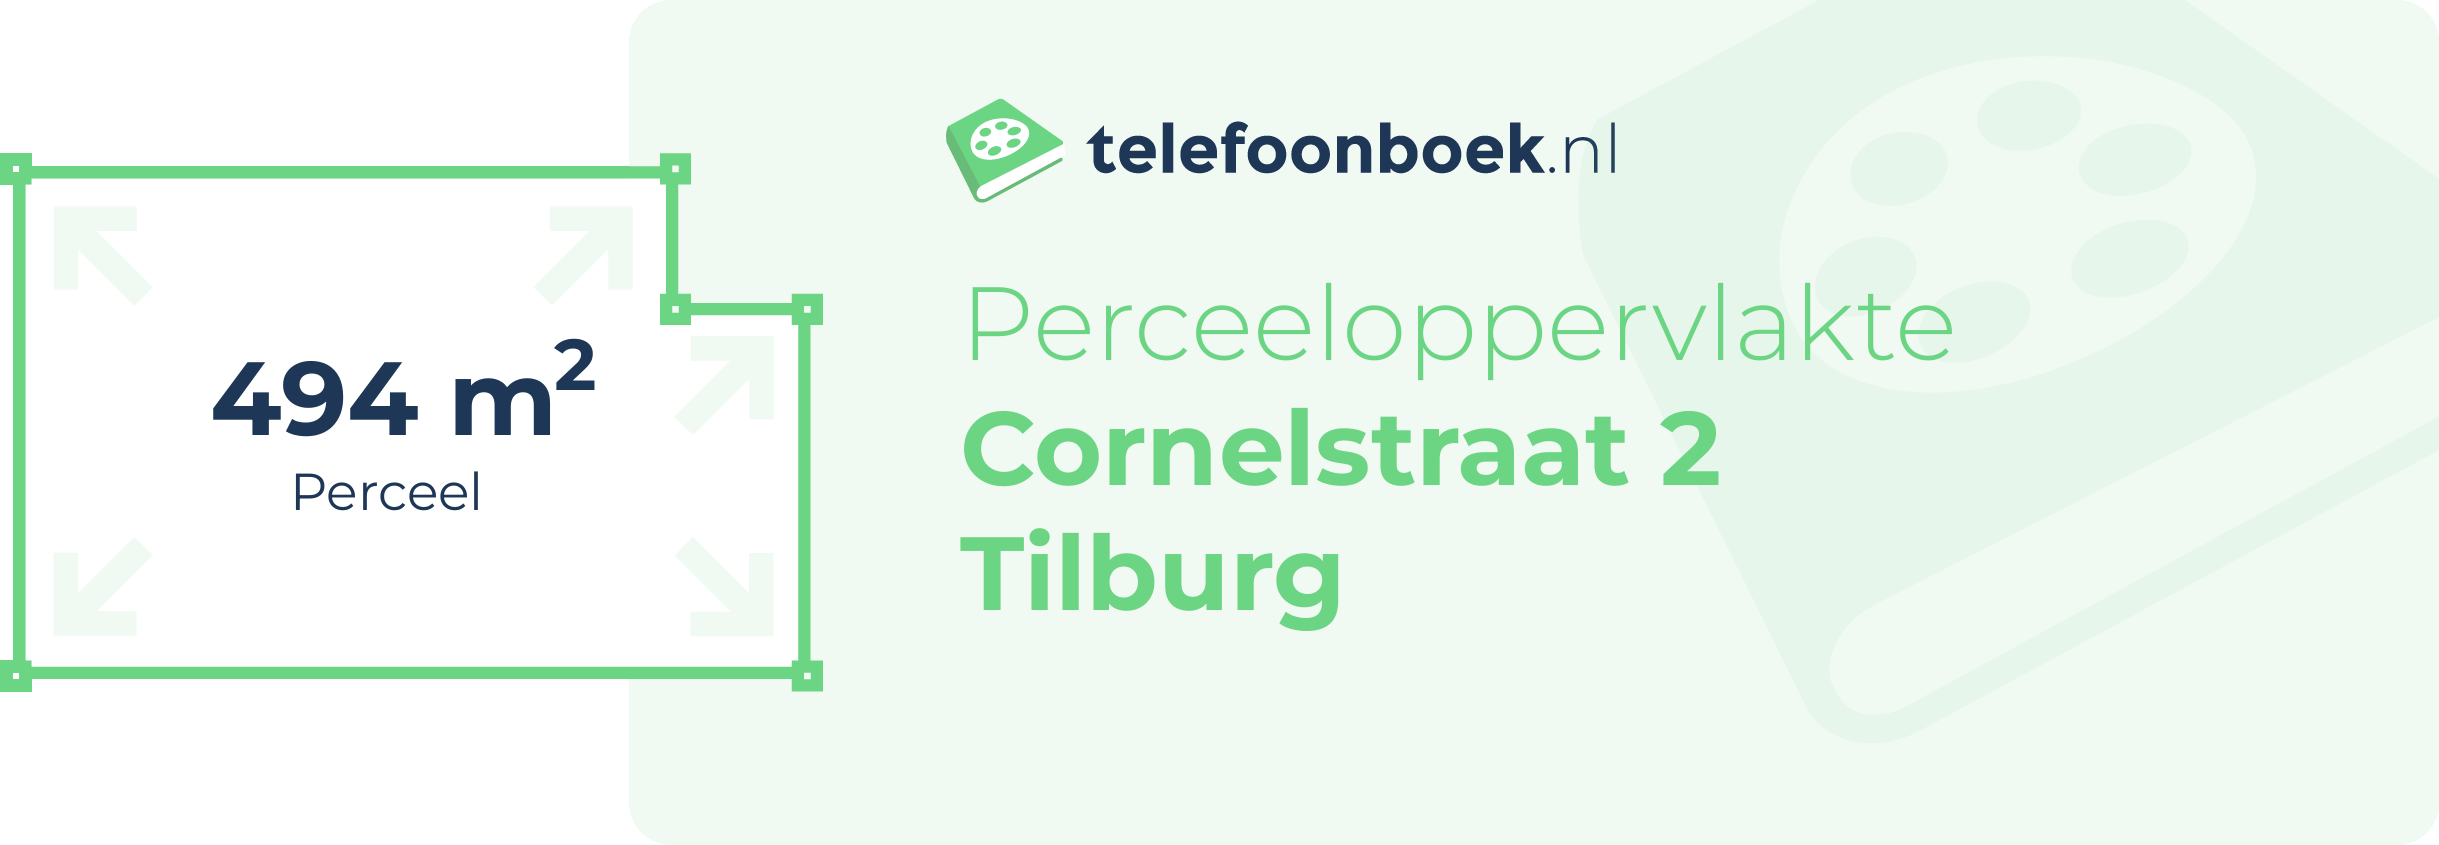 Perceeloppervlakte Cornelstraat 2 Tilburg